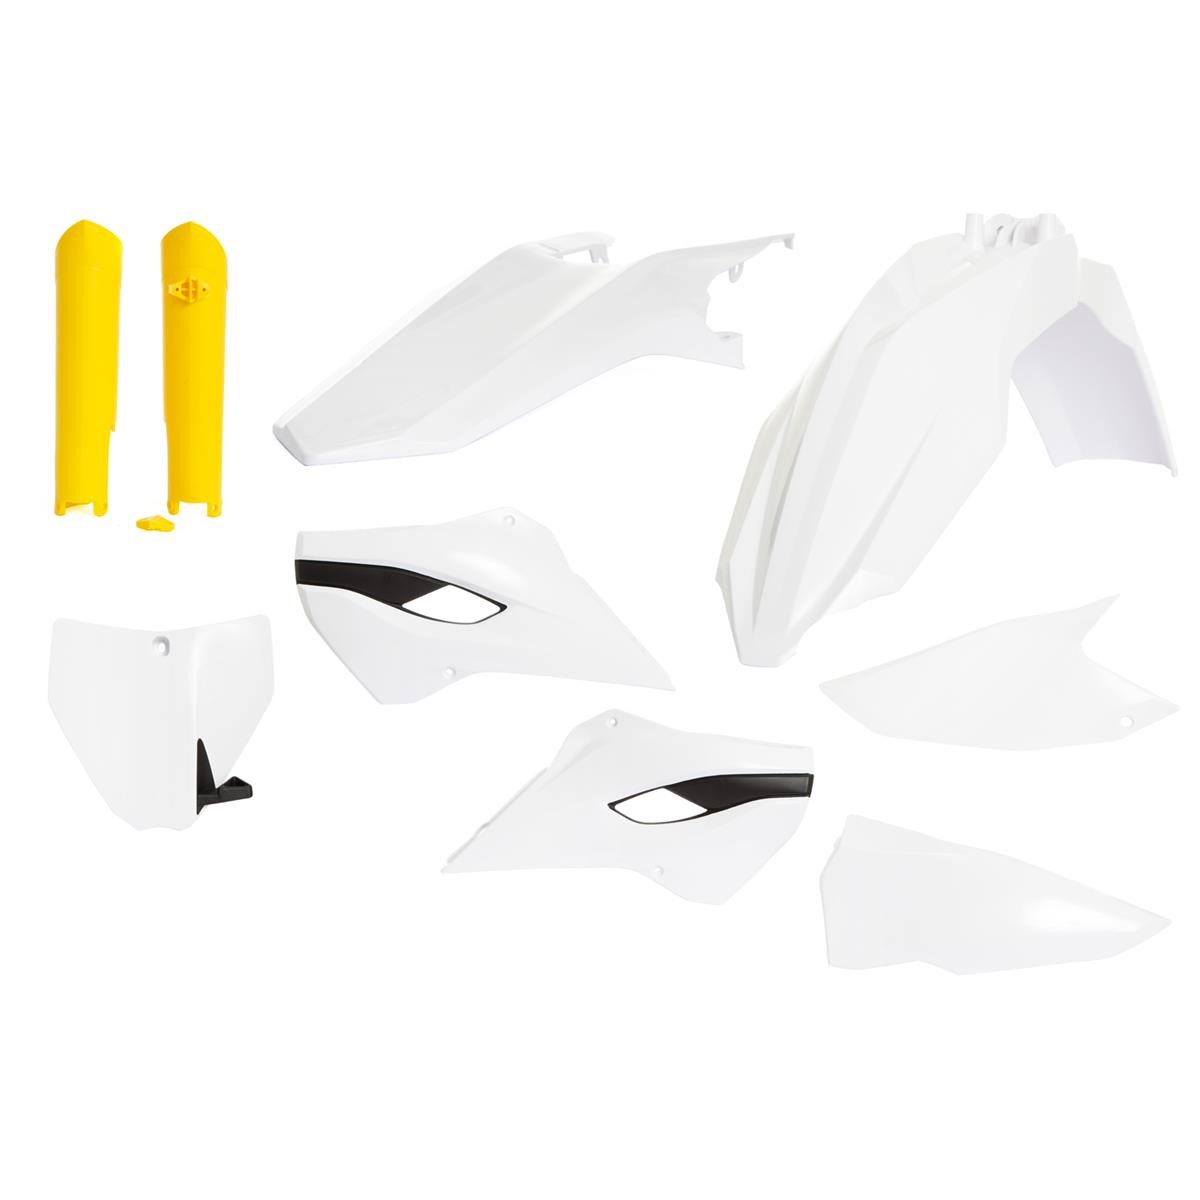 Acerbis Plastic Kit Full-Kit Husqvarna TC/FC 2014, Replica, White